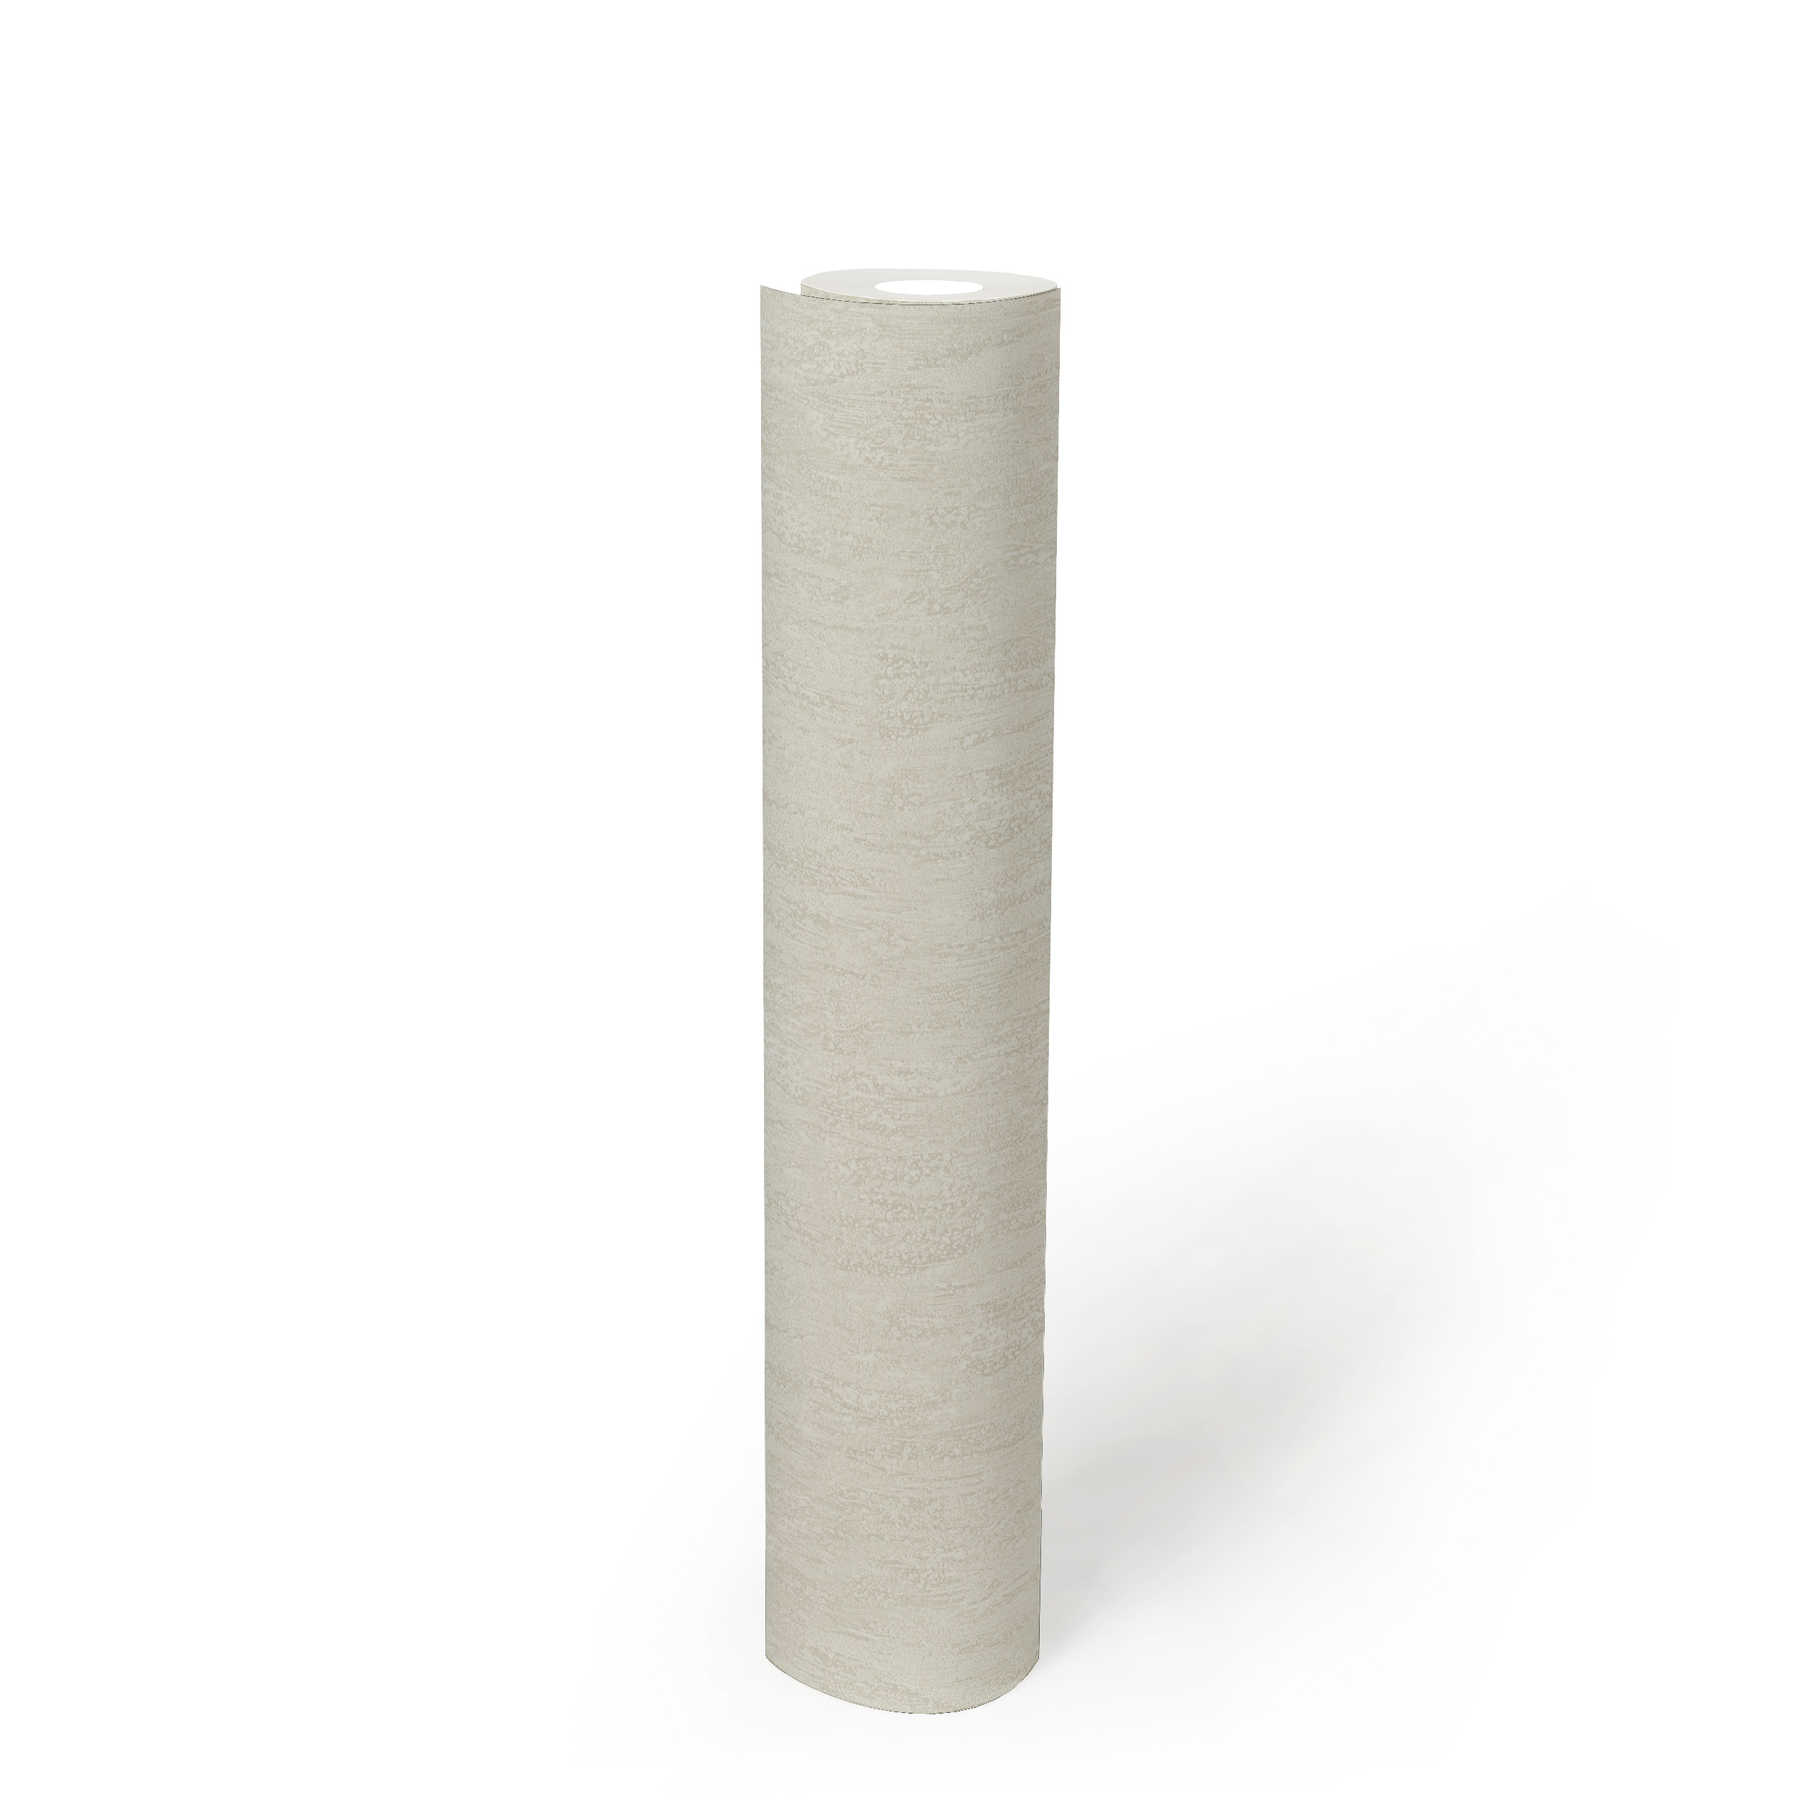             Papier peint structuré avec motif naturel gaufré uni - Crème
        